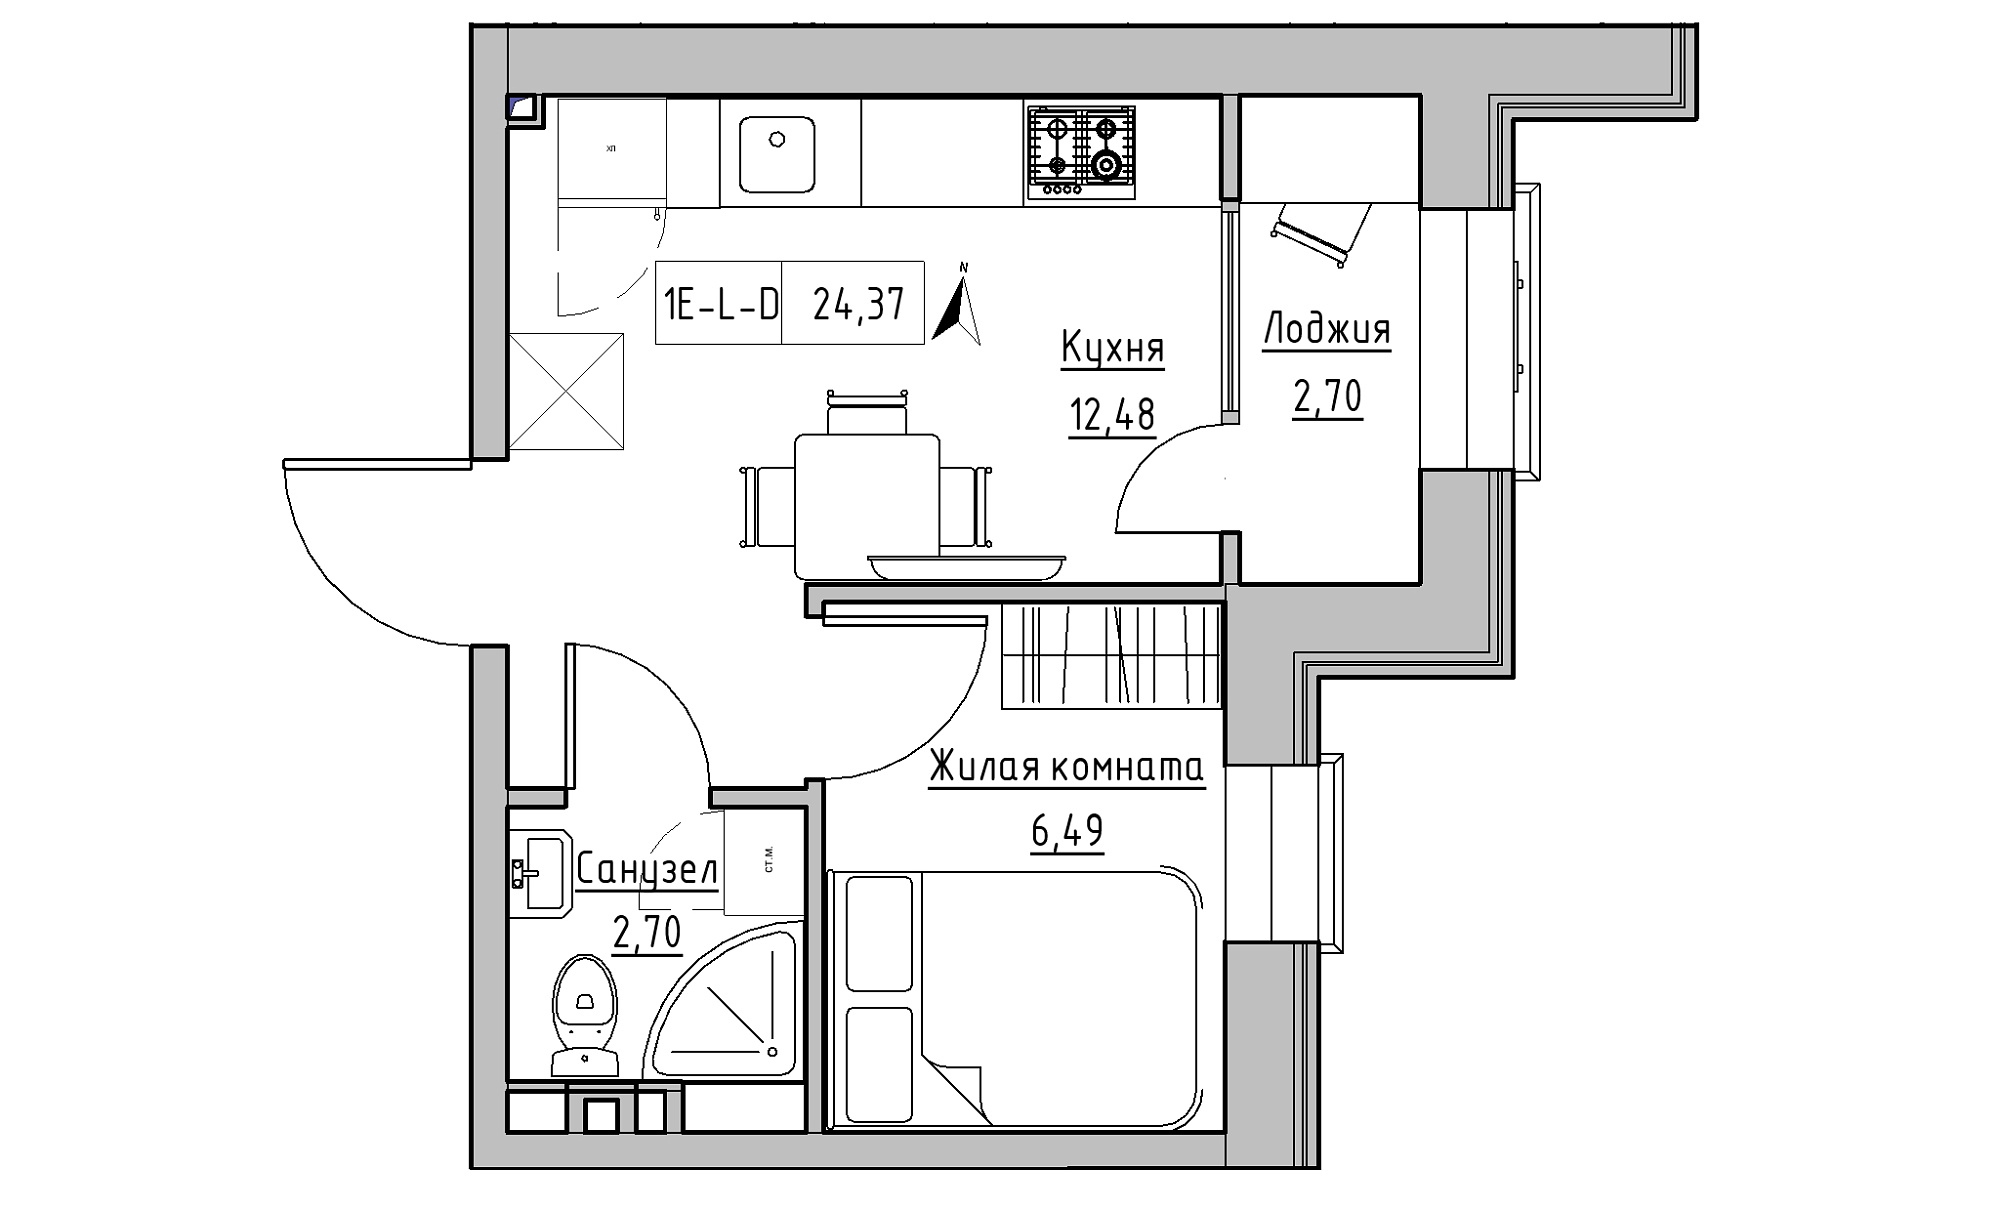 Планування 1-к квартира площею 24.37м2, KS-016-03/0015.